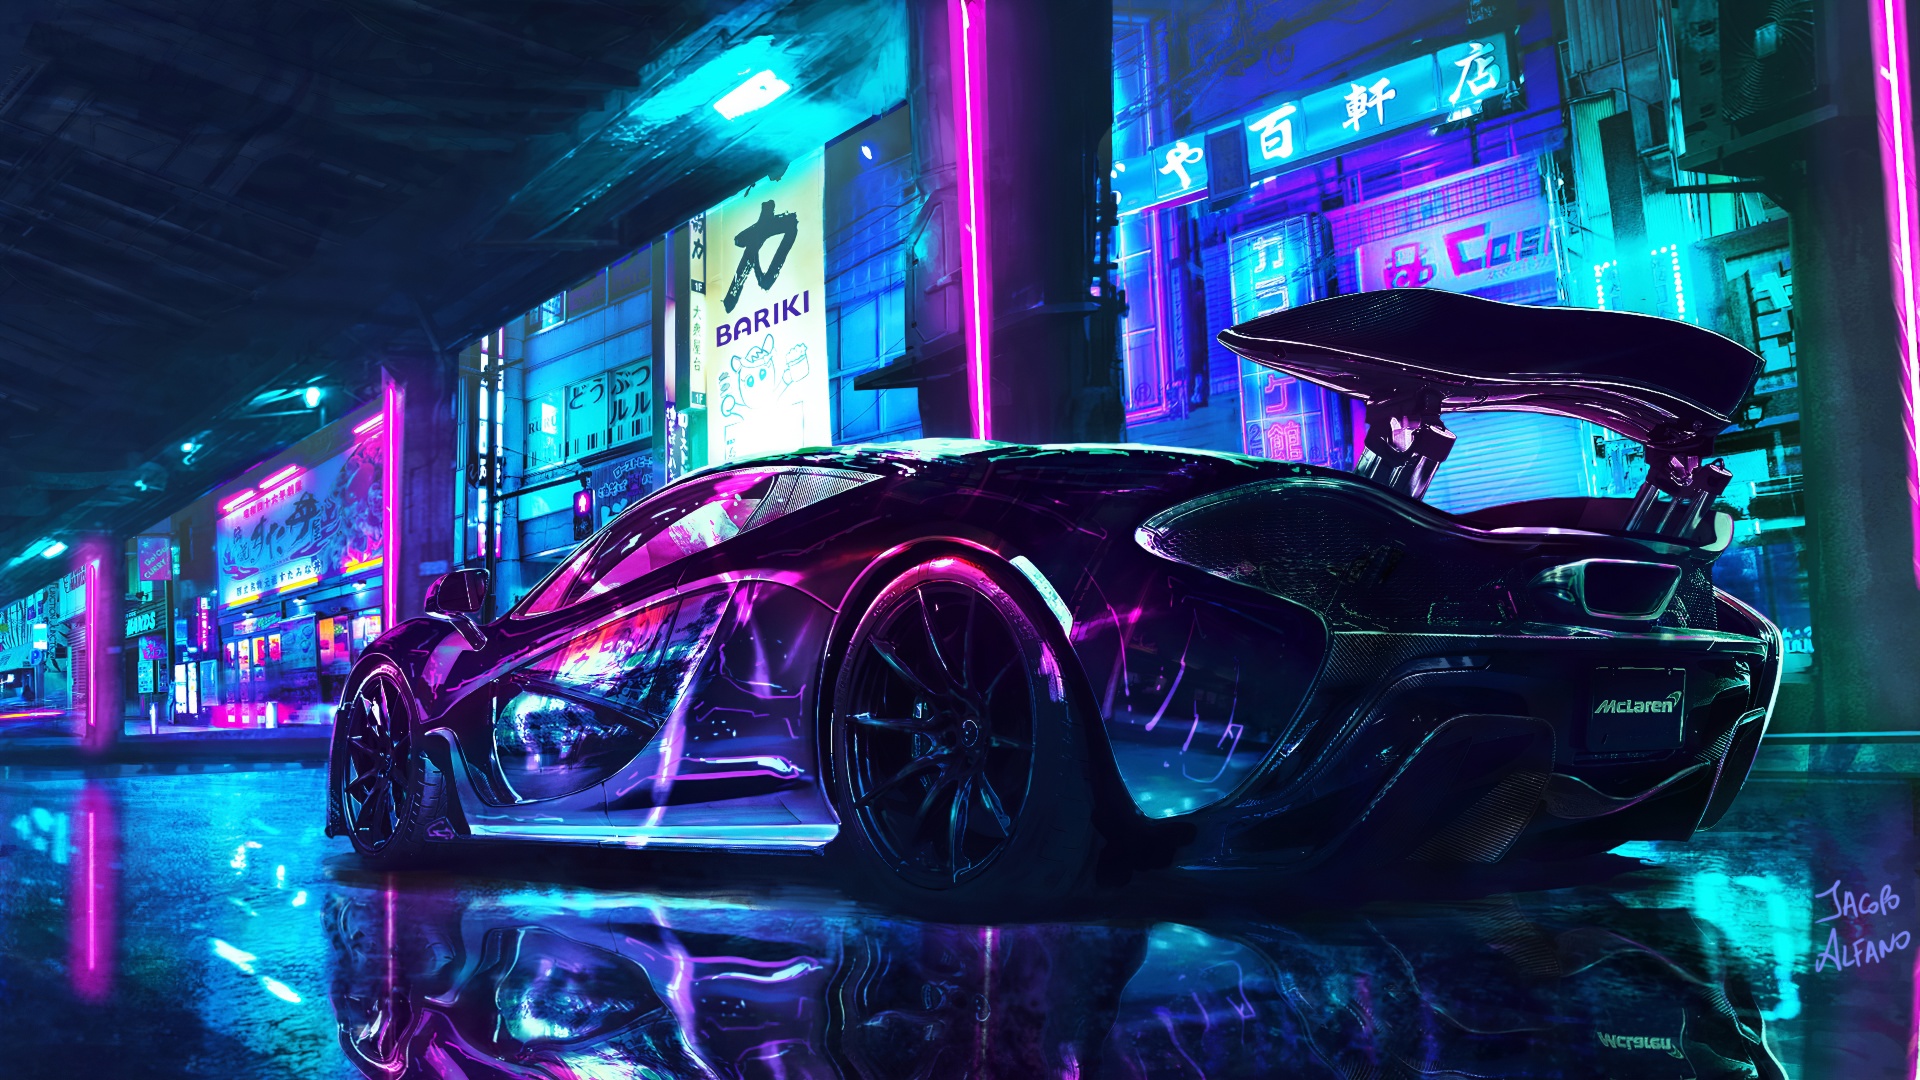 Cyberpunk Wallpaper 4K, McLaren, Supercars, Neon art